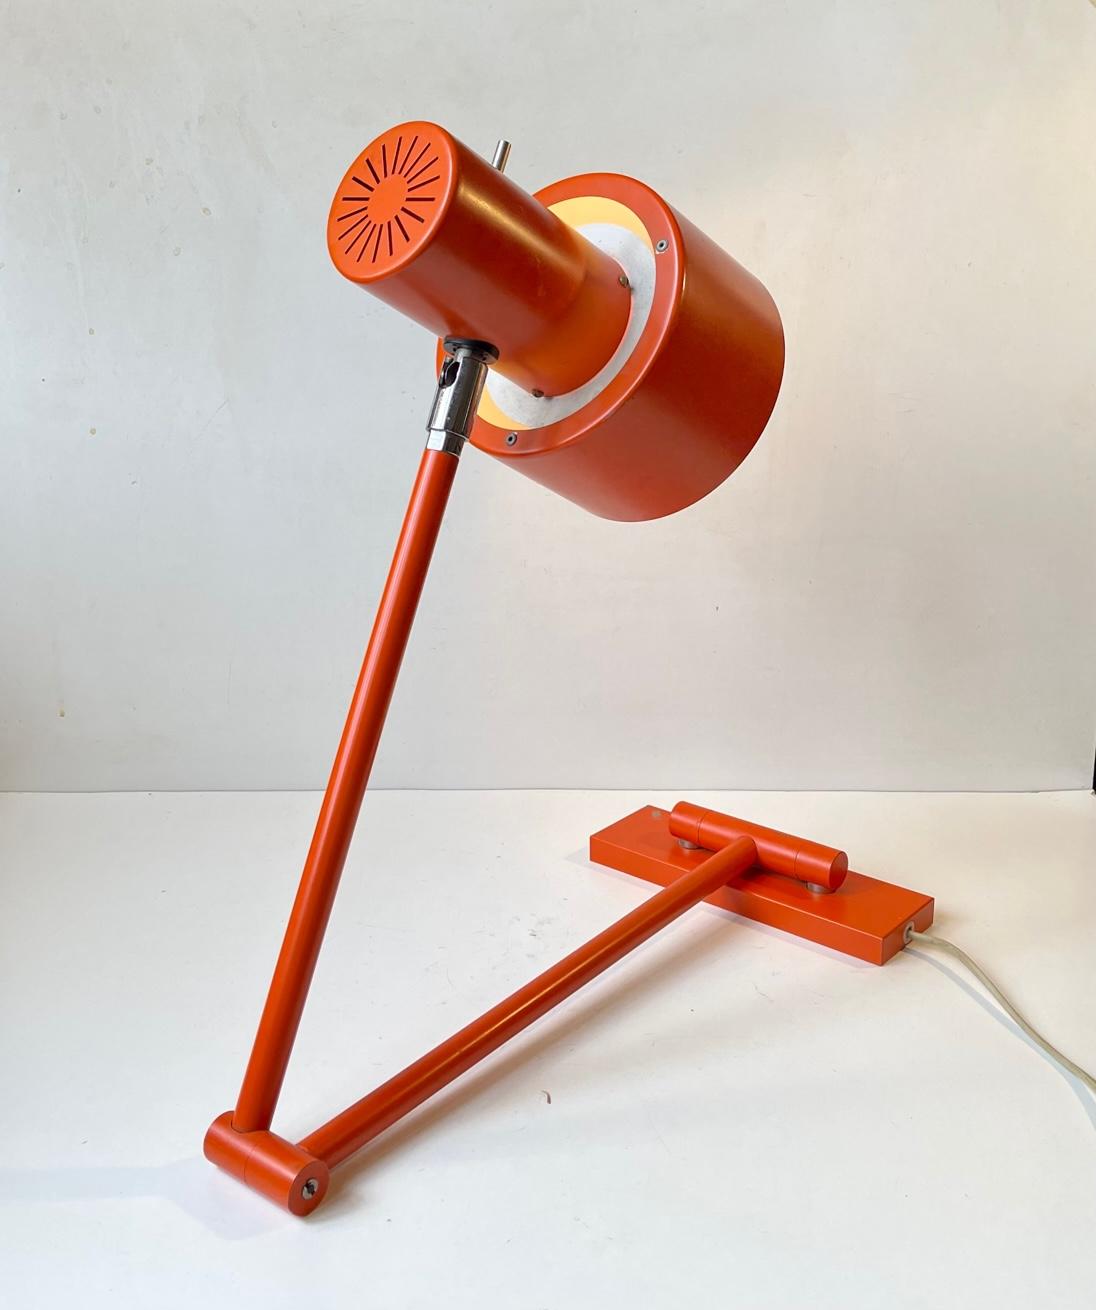 Une rare applique murale ou lampe de table à bras pivotant dans sa couleur orange originale. Il s'appelle Skala et a été conçu en 1969 par Jo Hammerborg et fabriqué par Fog & Mørup au Danemark de 1969 à 1975. C'est une lampe très polyvalente qui